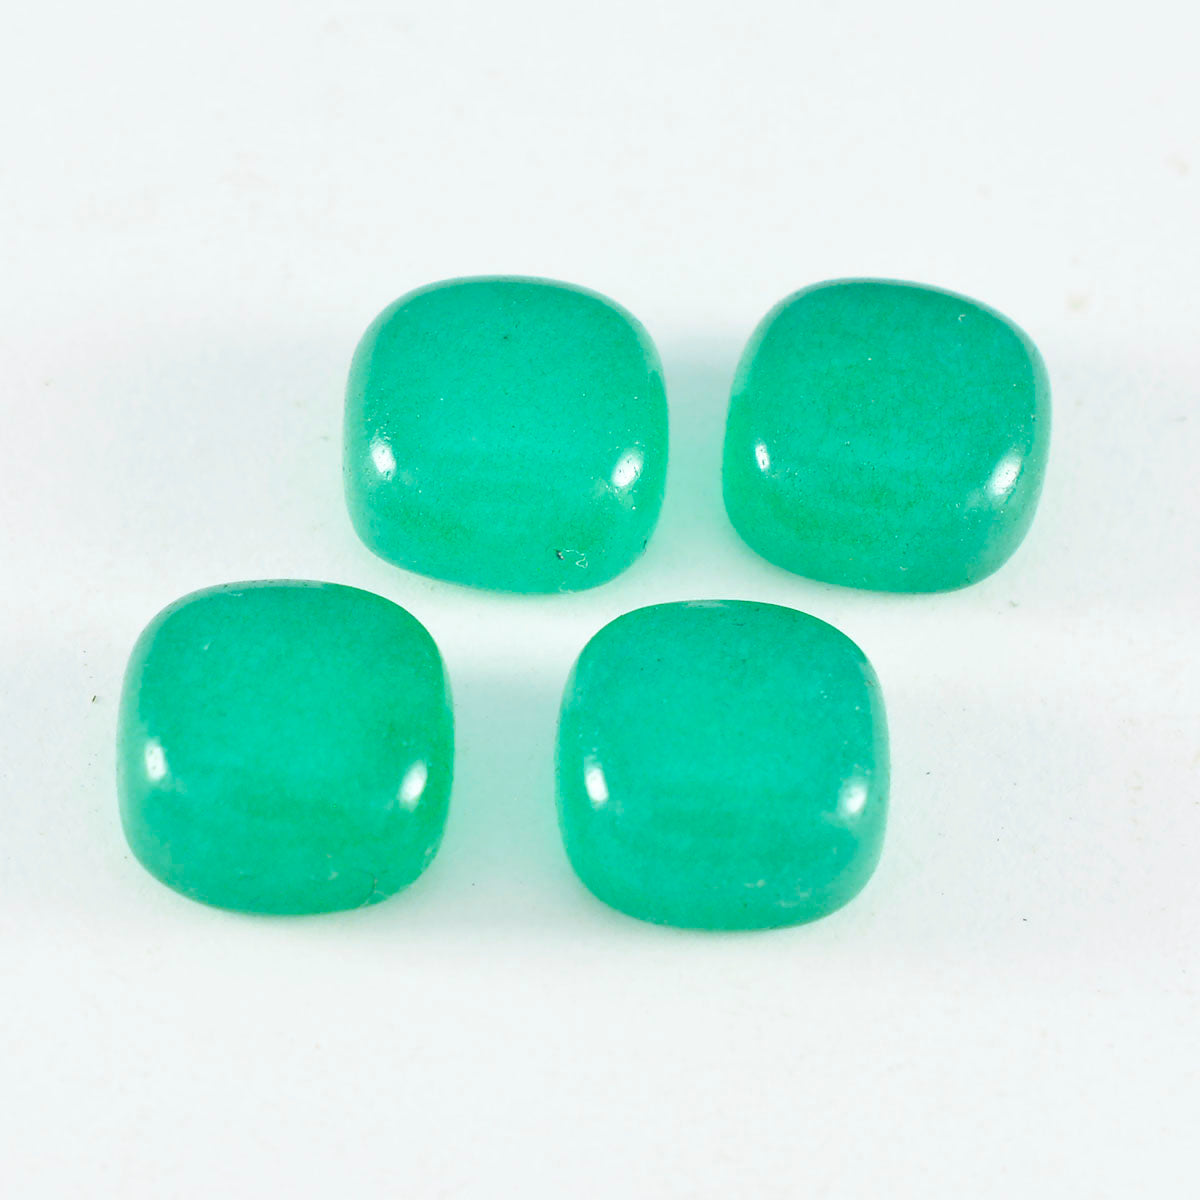 Riyogems 1 cabujón de ónix verde de 0.276 x 0.276 in, forma de cojín, piedra preciosa suelta de calidad AAA